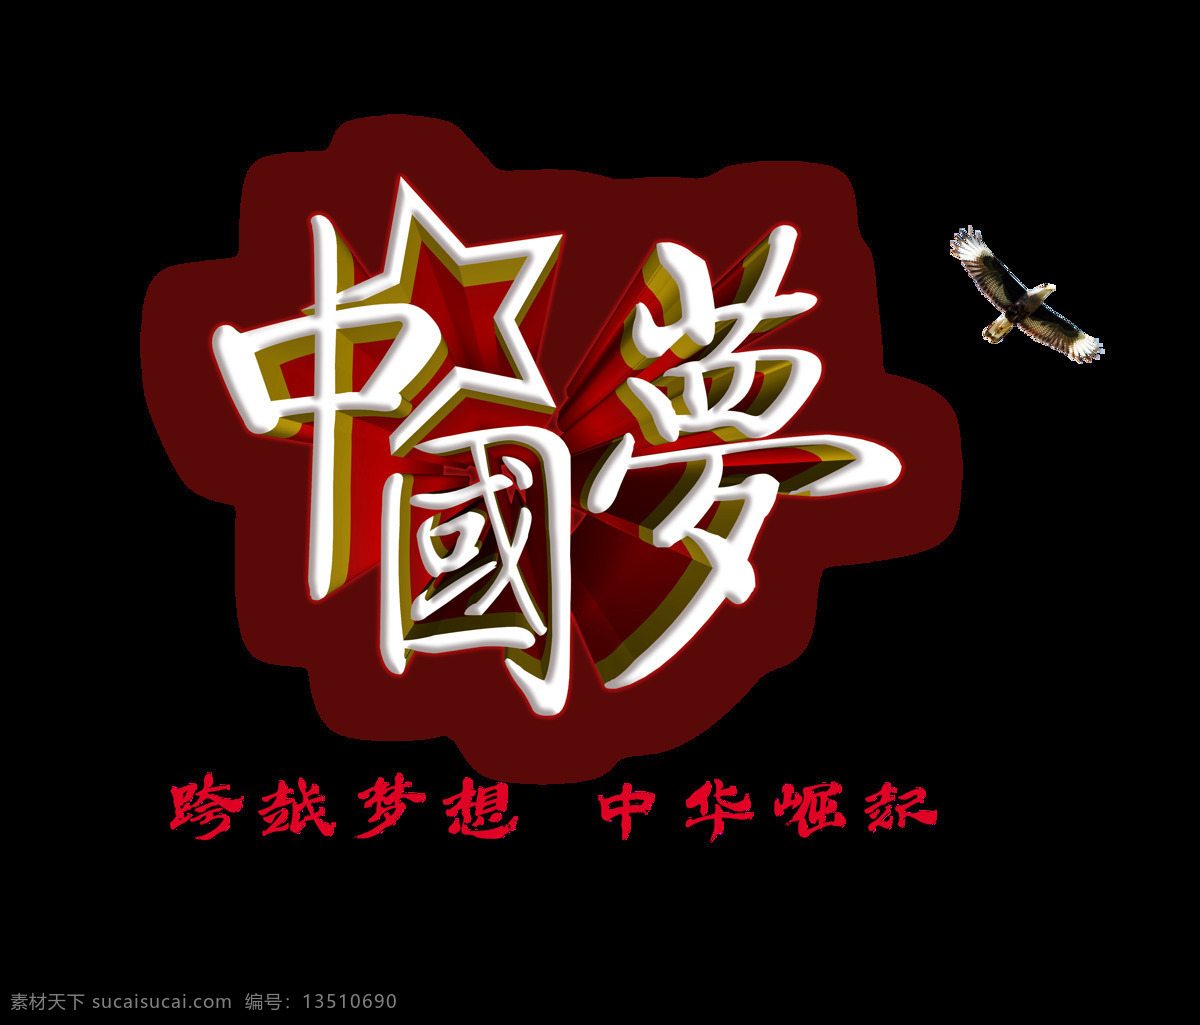 中国 梦 飞鹰 中华 崛起 艺术 字 立体 中国梦 立体字 元素 中华崛起 艺术字 海报 免抠图